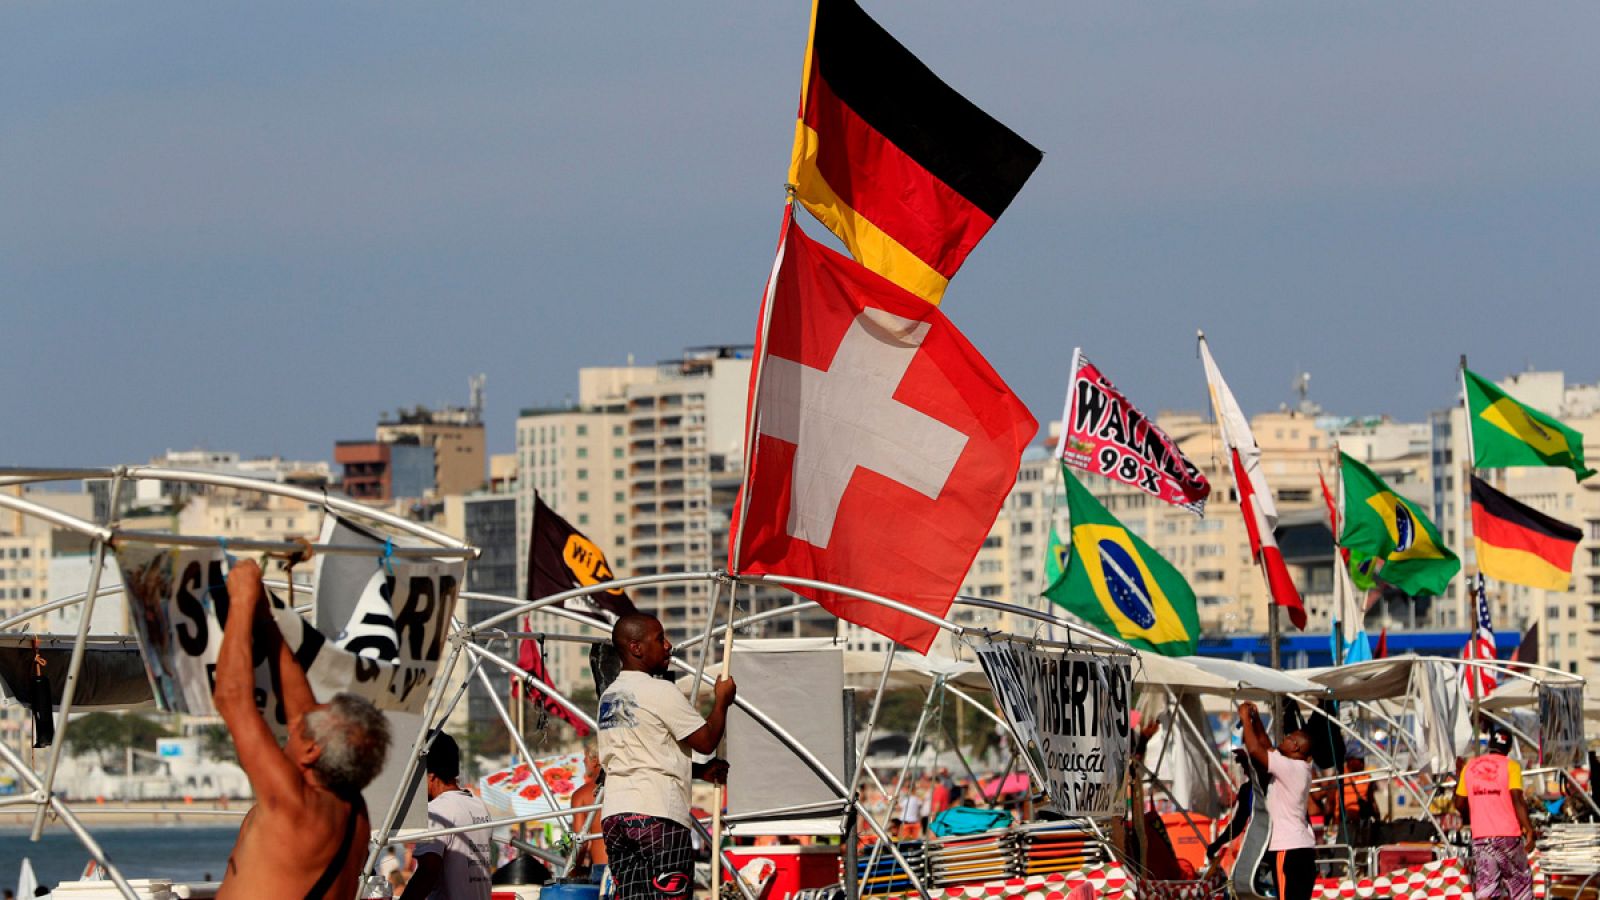 Banderas en la playa de Copacabana